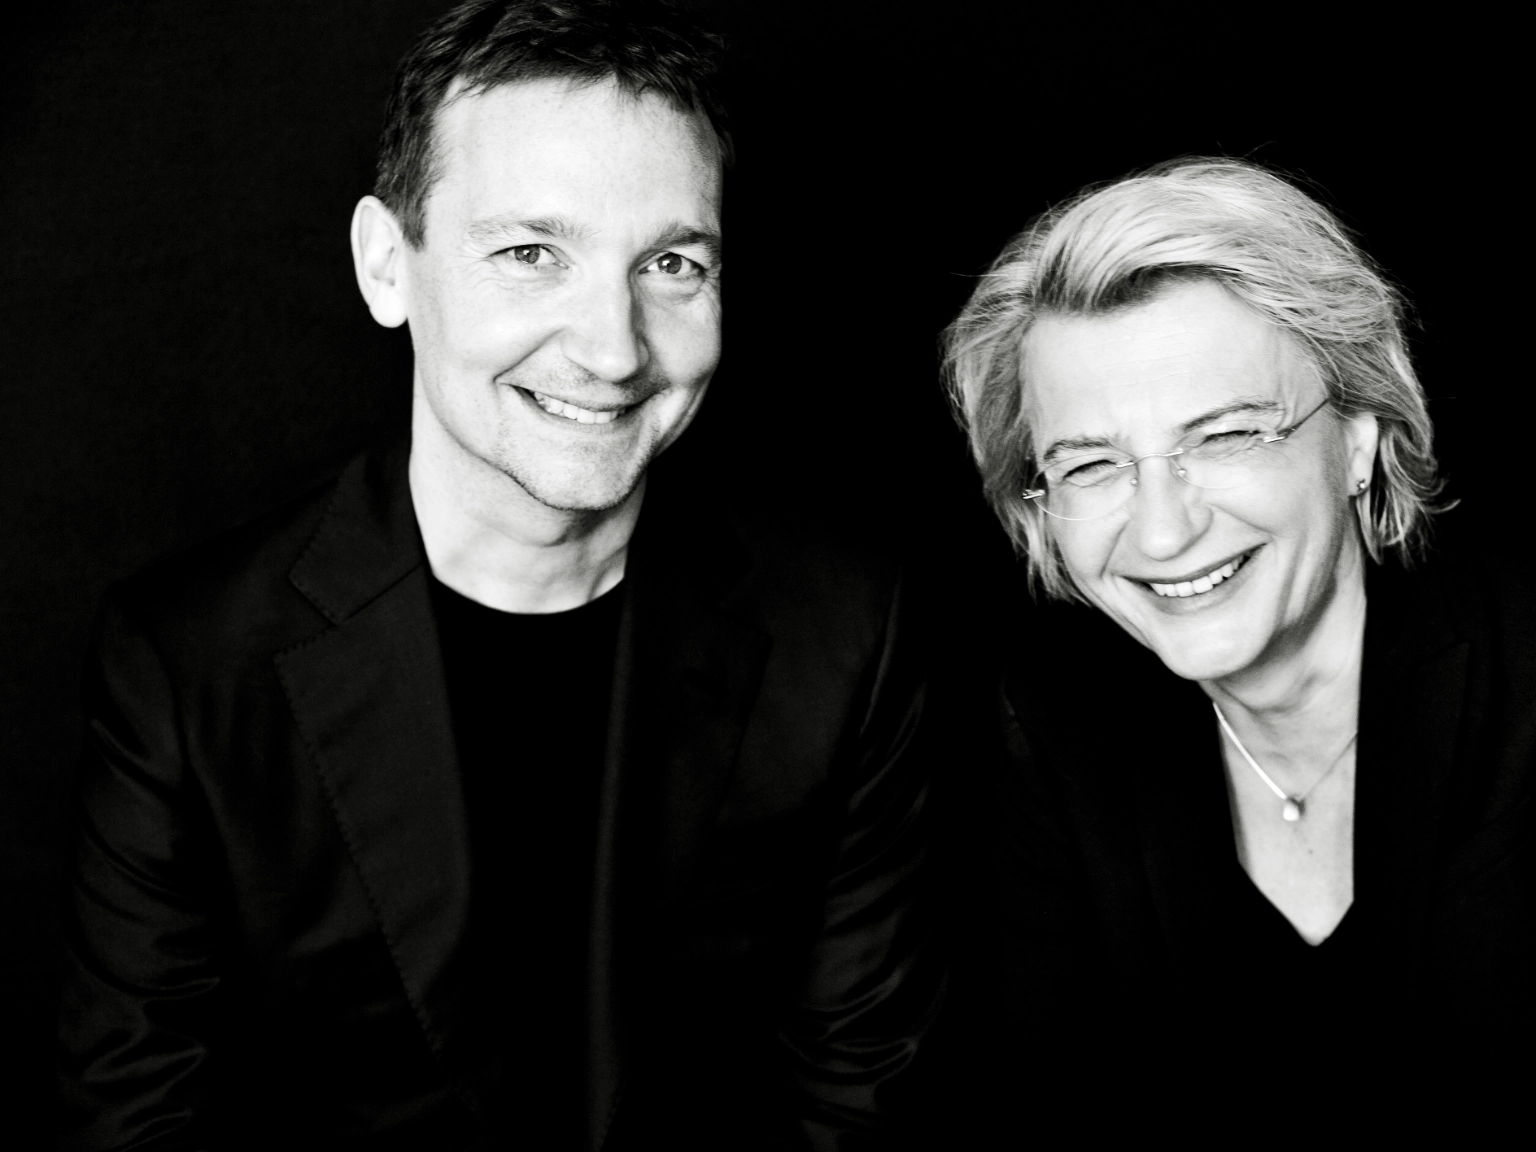 Die Künstlerische Leitung des Violinwettbewerbs: Antje Weithaas (rechts) und Oliver Wille (links). Beide lachen in die Kamera.